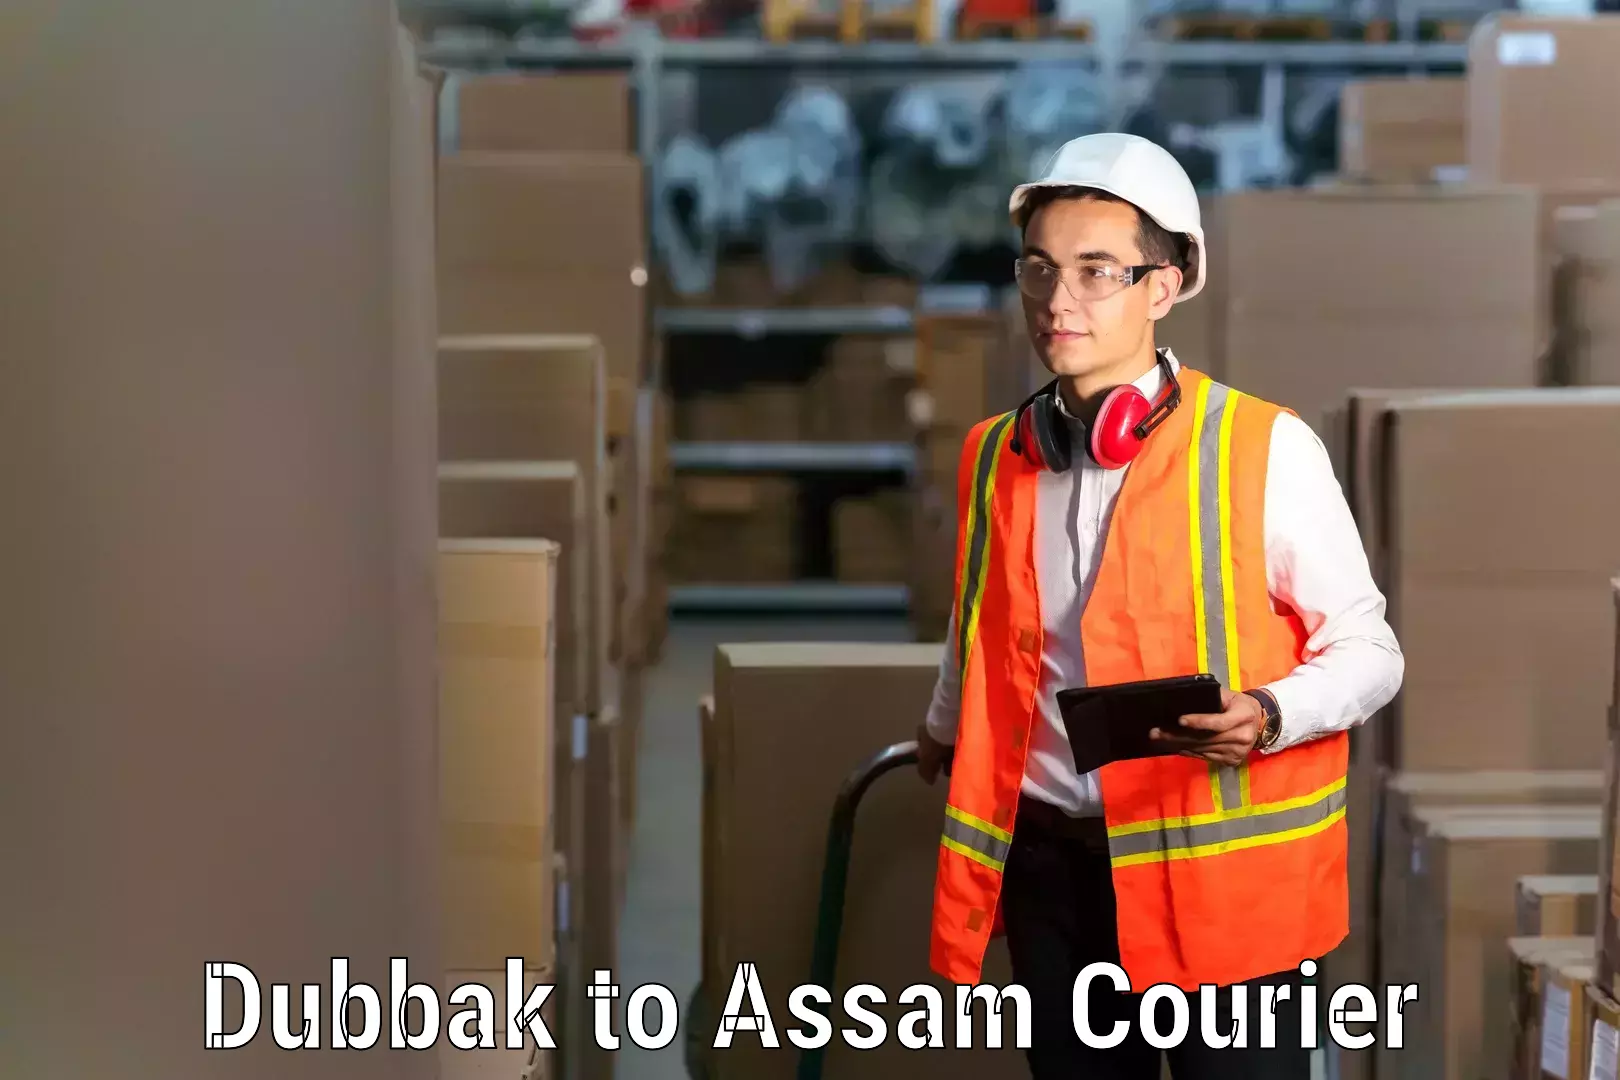 Expert household relocation Dubbak to Lala Assam